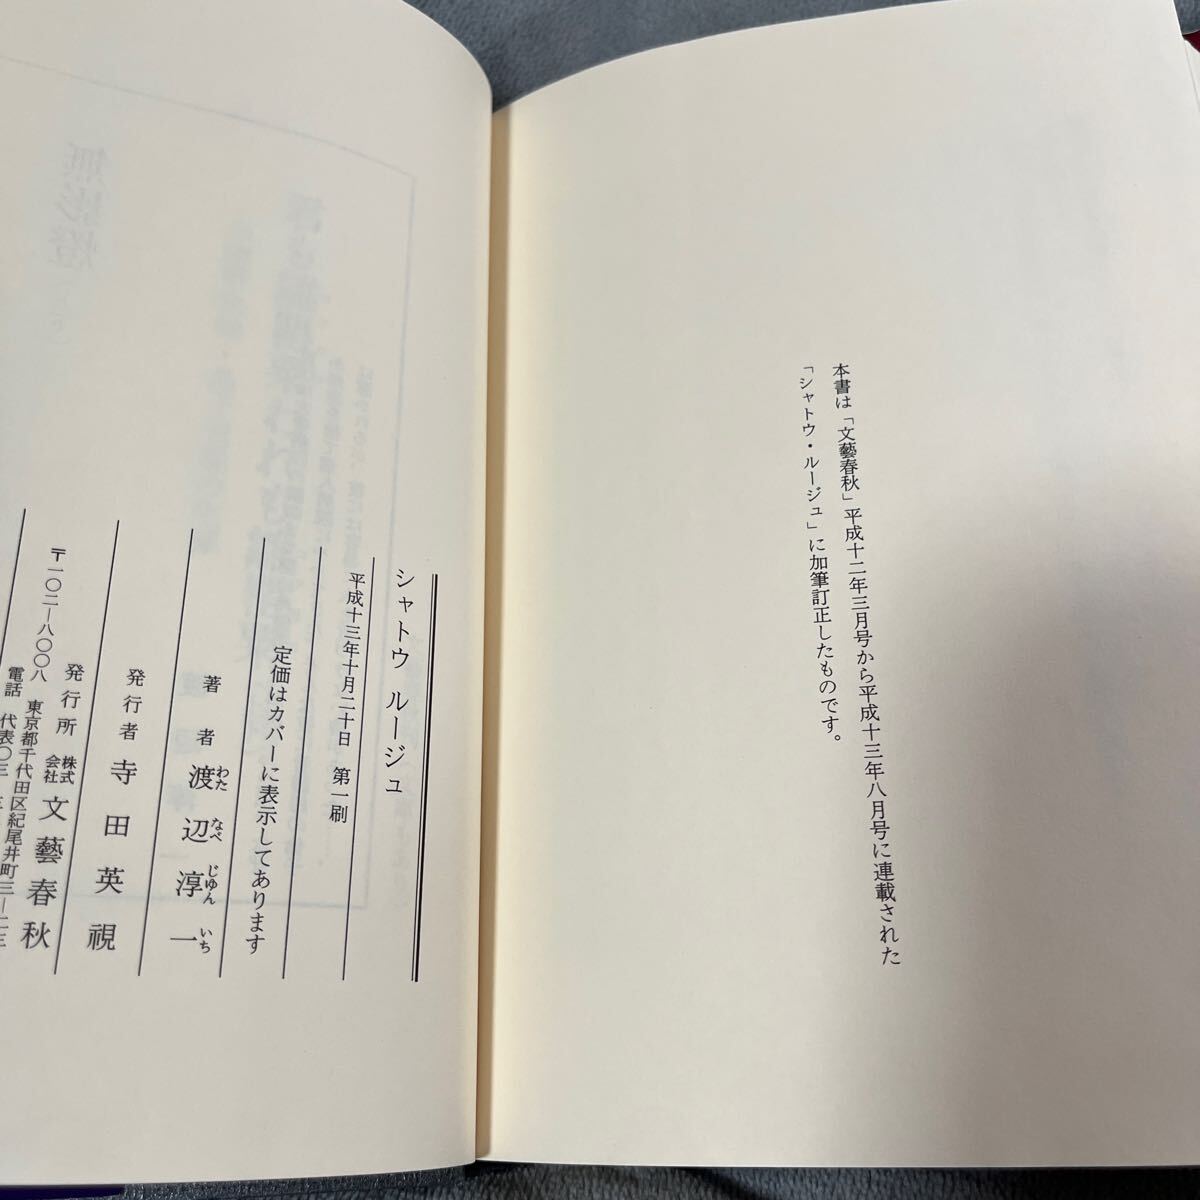 [ подпись книга@/../ первая версия ] Watanabe Jun'ichi [ автомобиль tou rouge ] Bungeishunju с поясом оби автограф книга